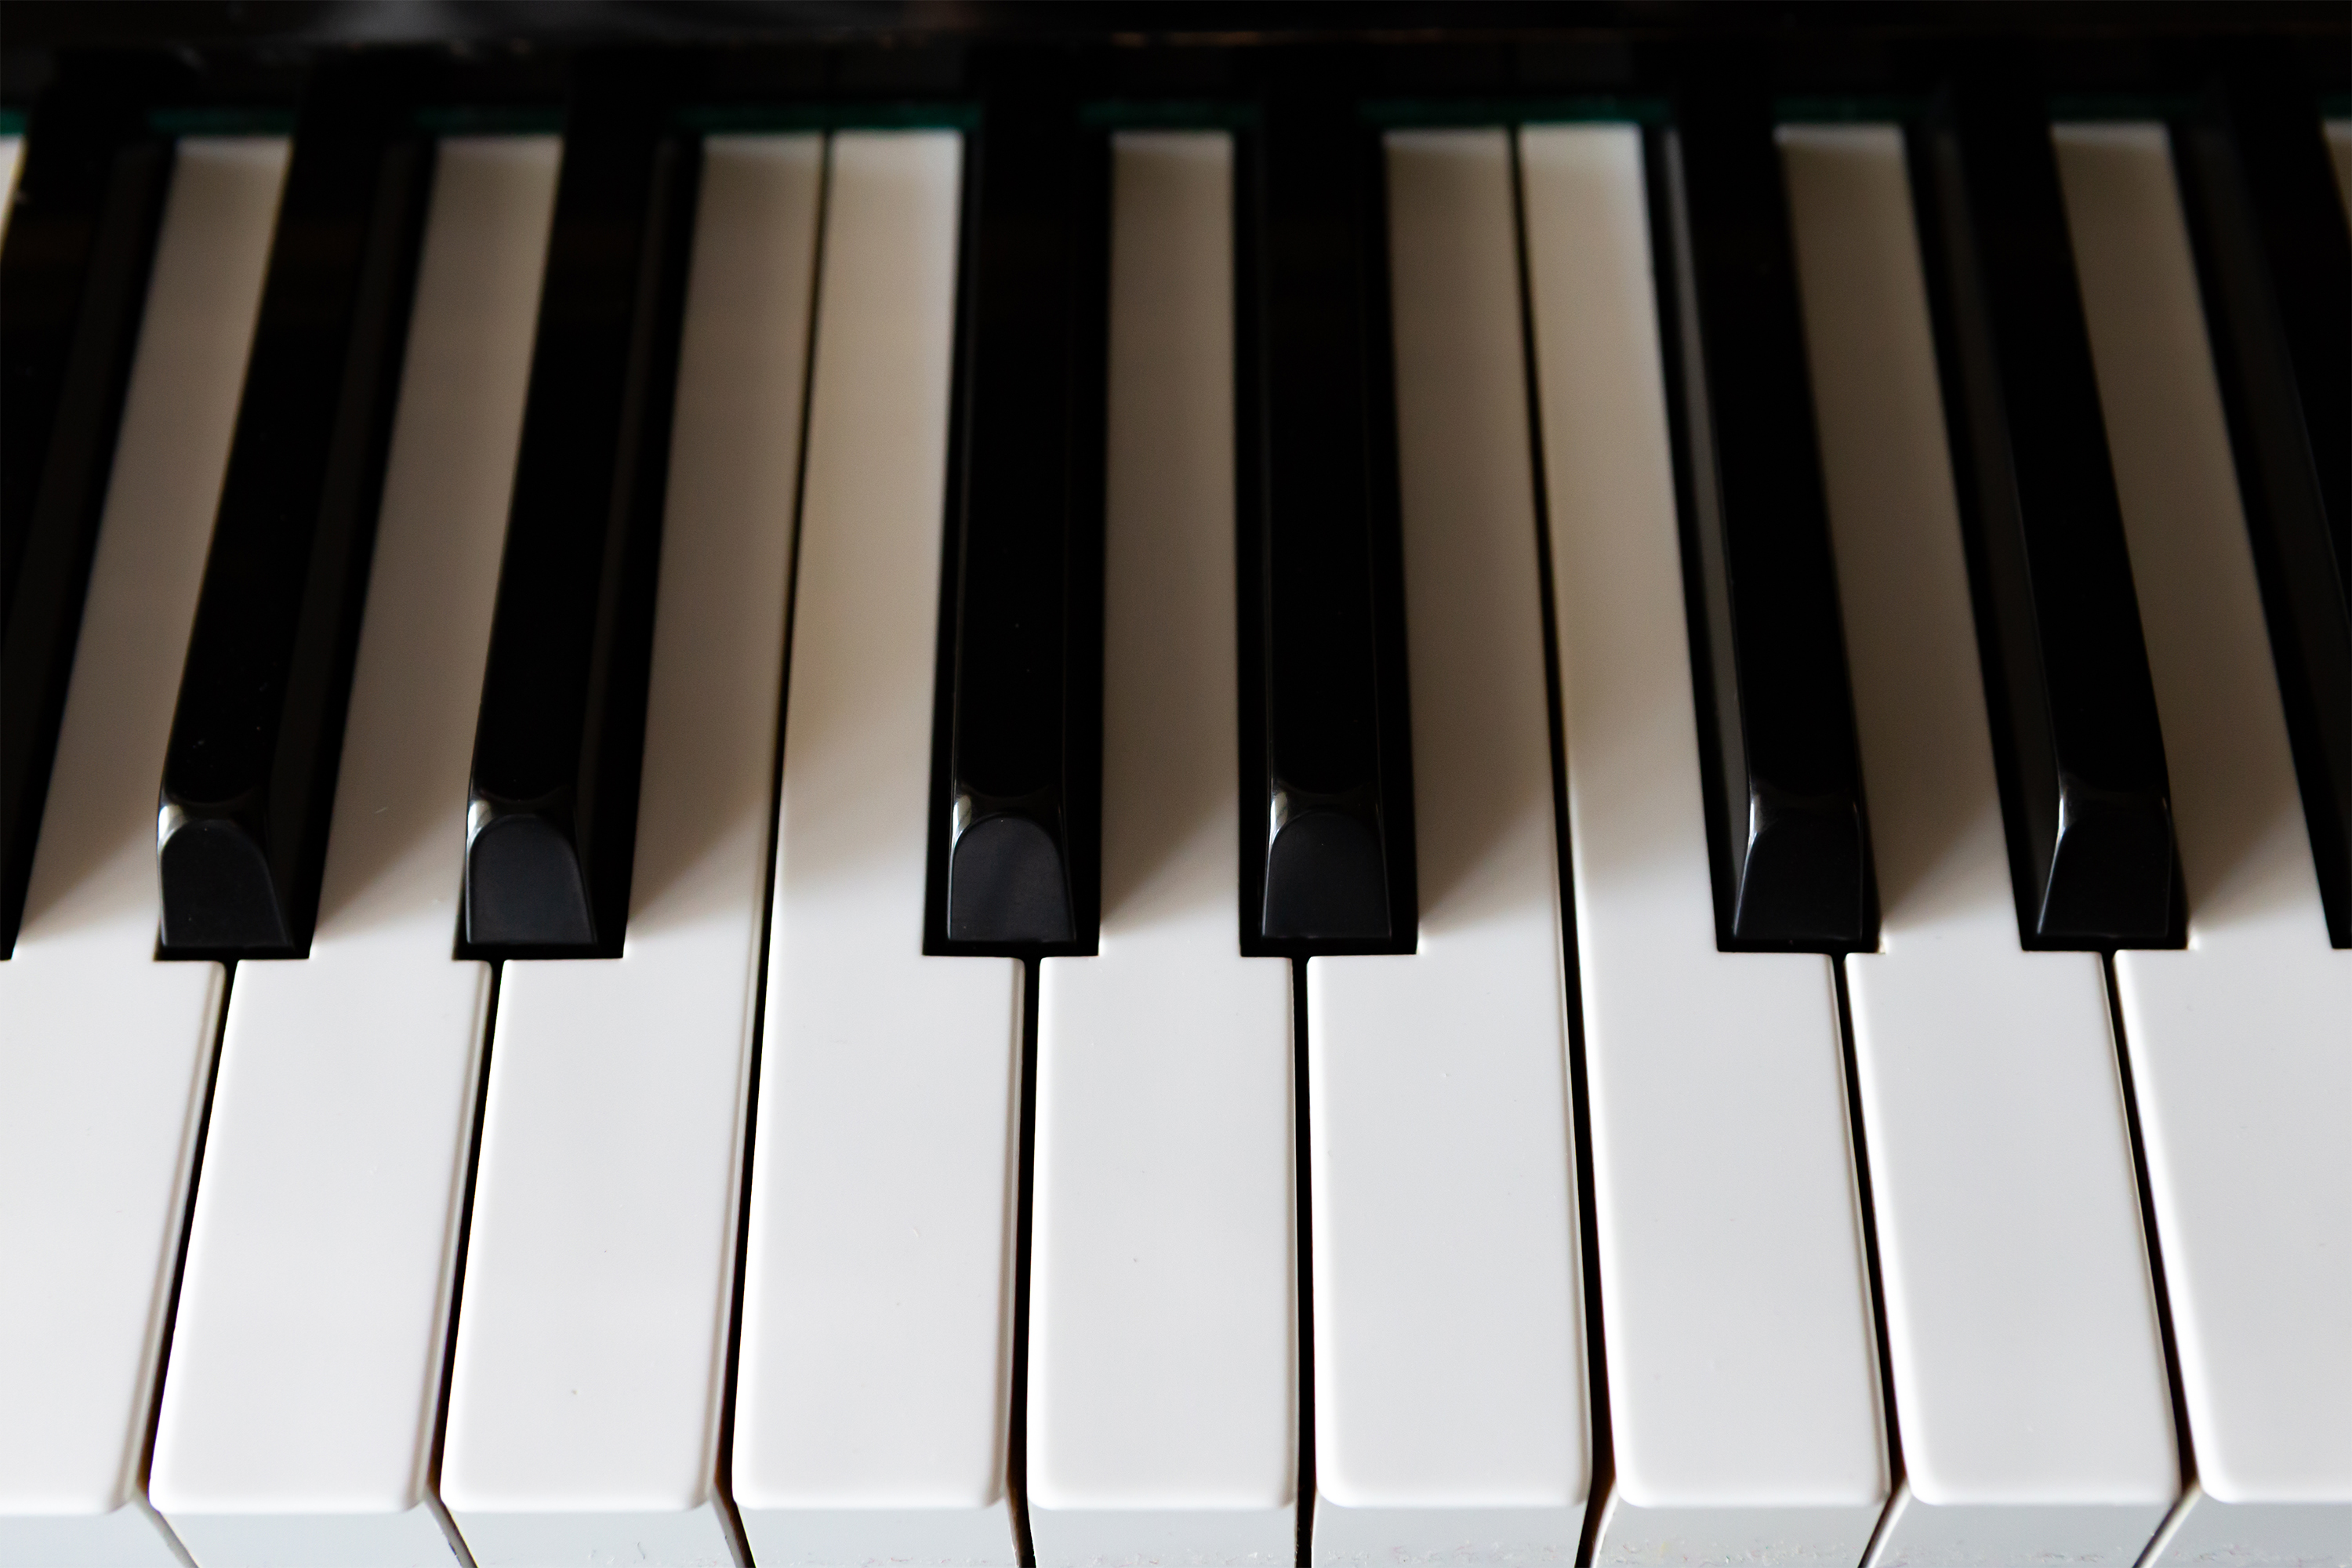 ピアノの鍵盤02 無料の高画質フリー写真素材 イメージズラボ